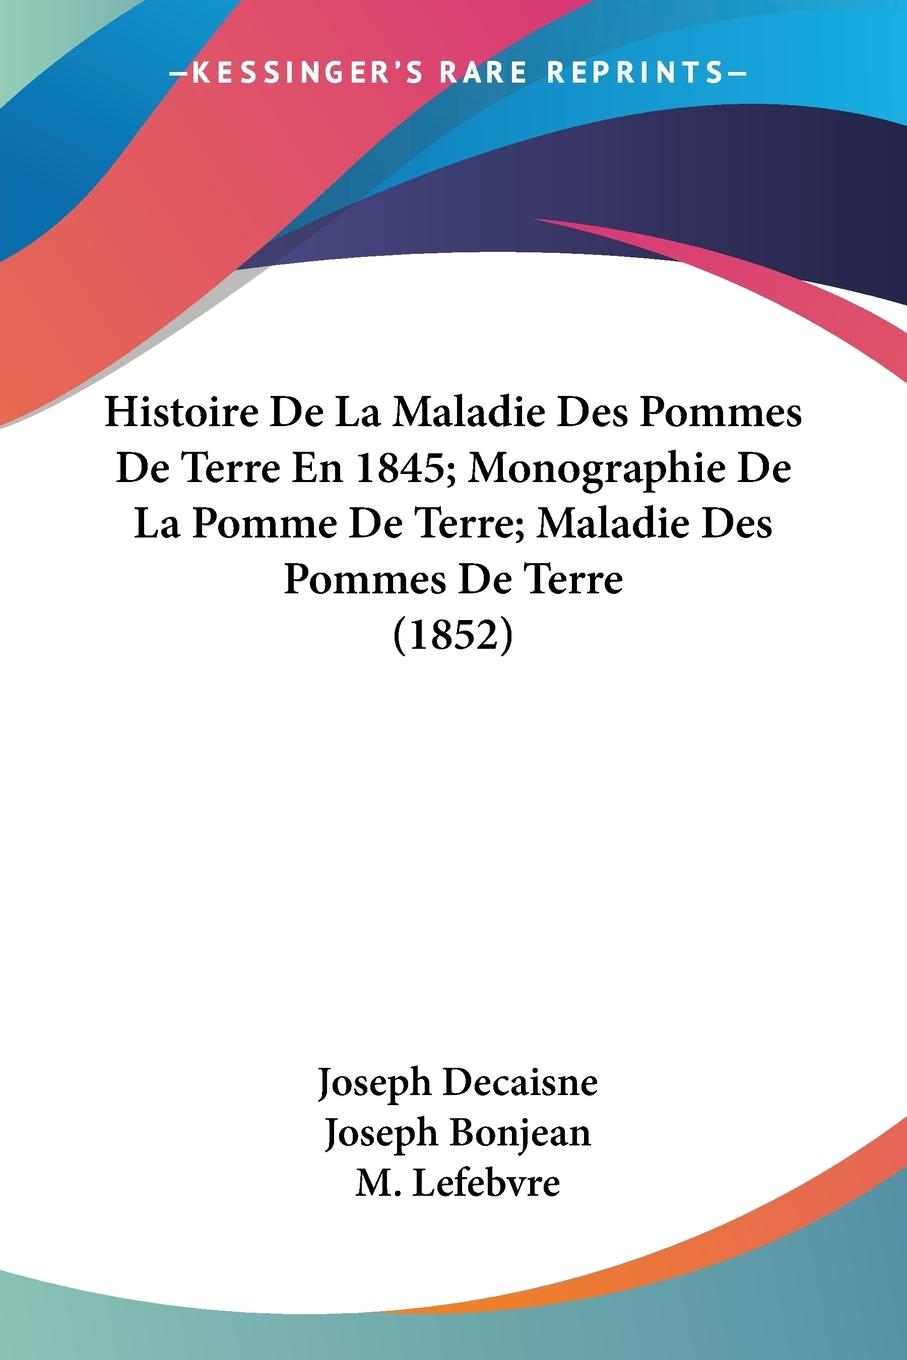 Histoire De La Maladie Des Pommes De Terre En 1845 Monographie De La Pomme De Terre Maladie Des Pommes De Terre (1852) - Decaisne, Joseph Bonjean, Joseph Lefebvre, M.